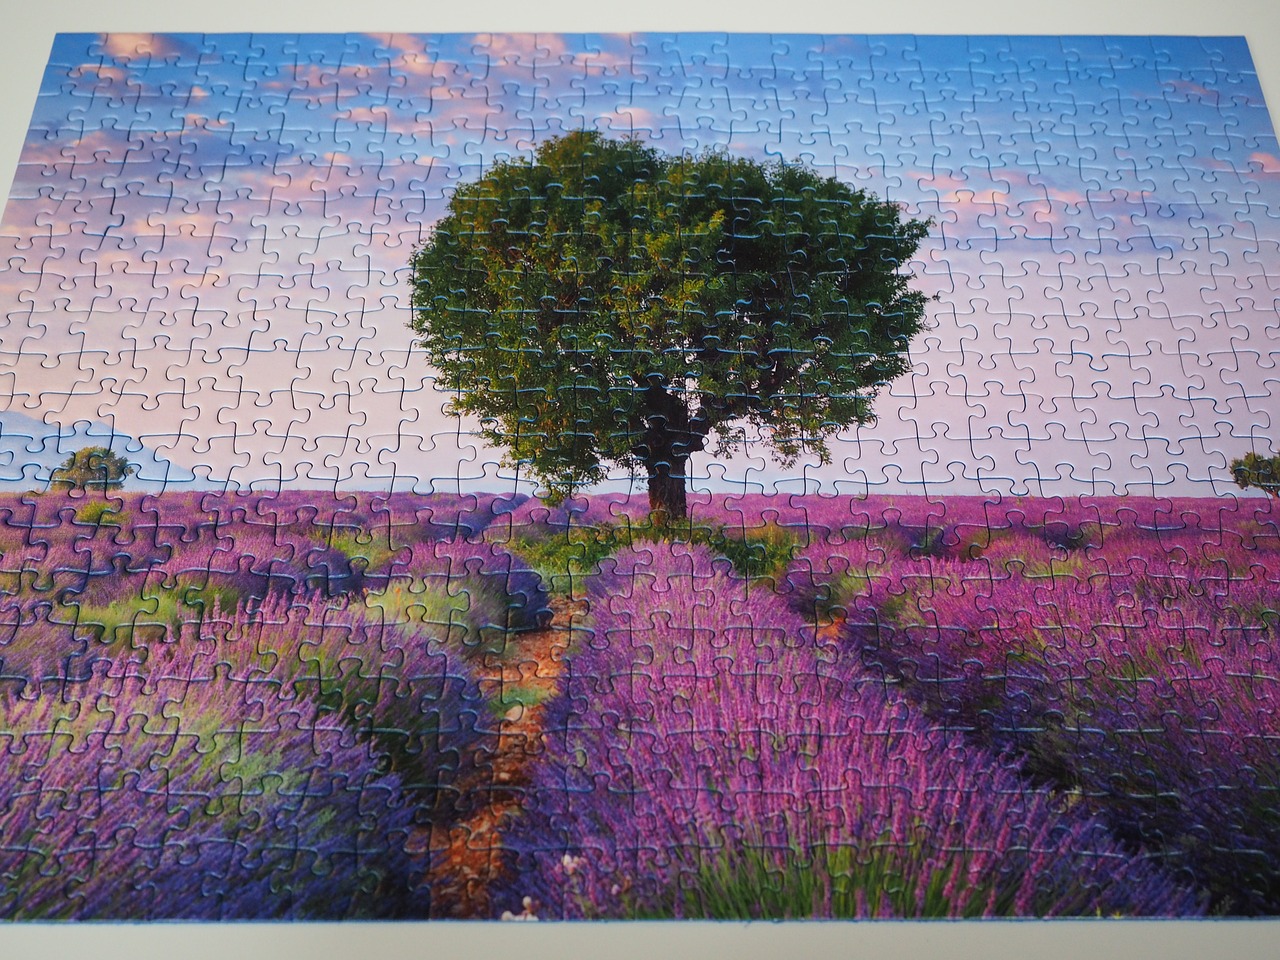 puzzle solved finish free photo